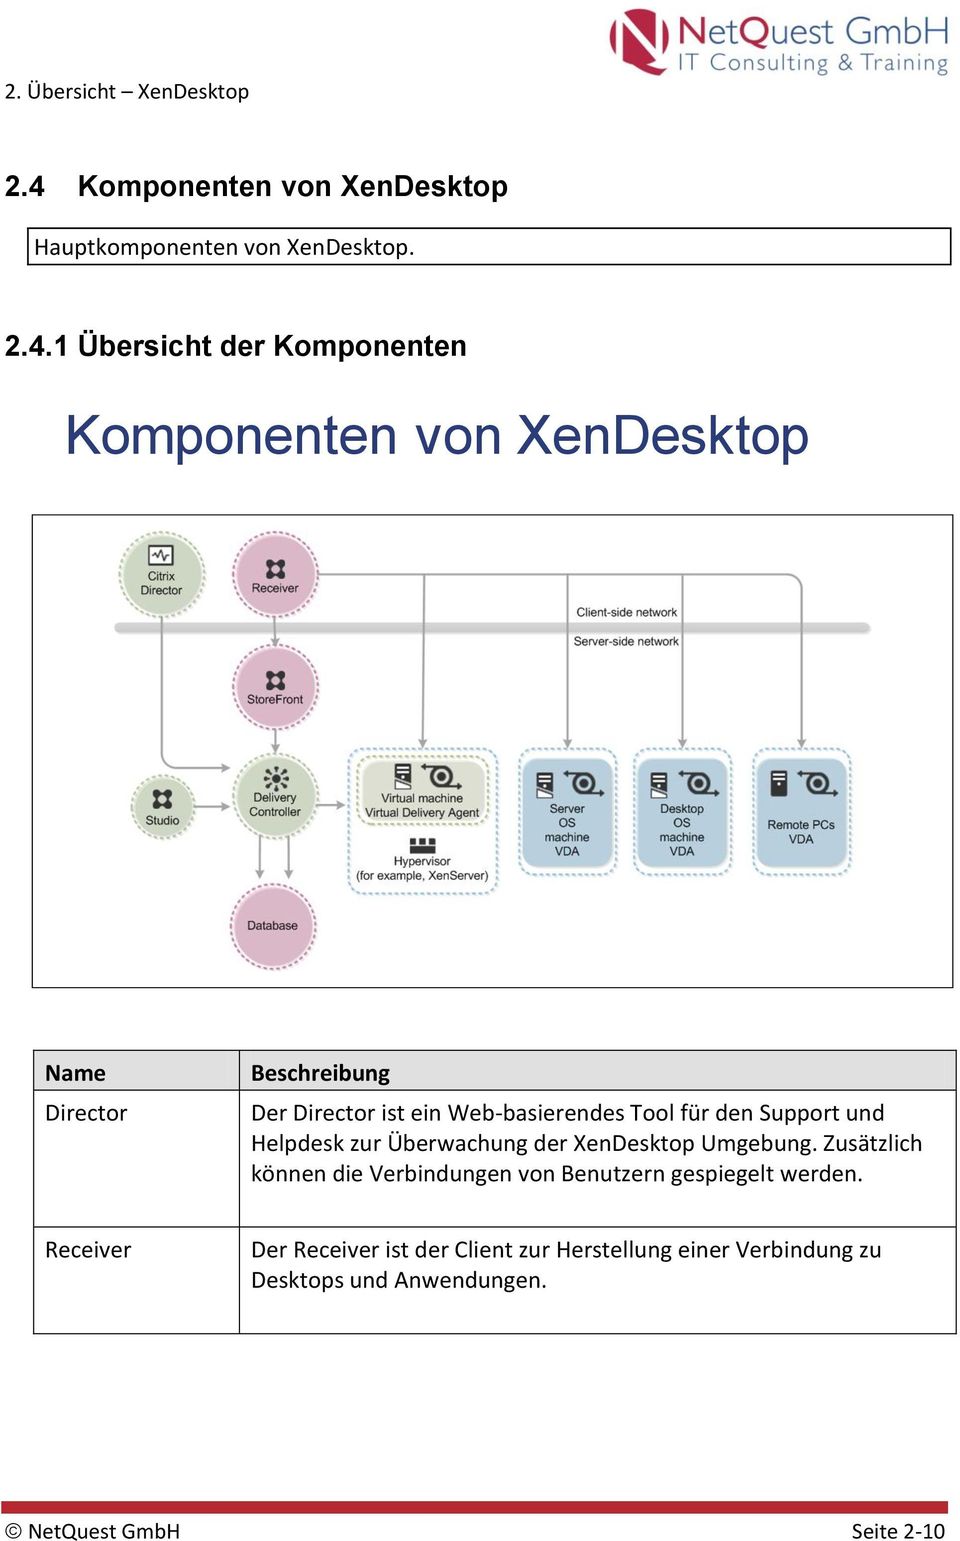 Überwachung der XenDesktop Umgebung. Zusätzlich können die Verbindungen von Benutzern gespiegelt werden.